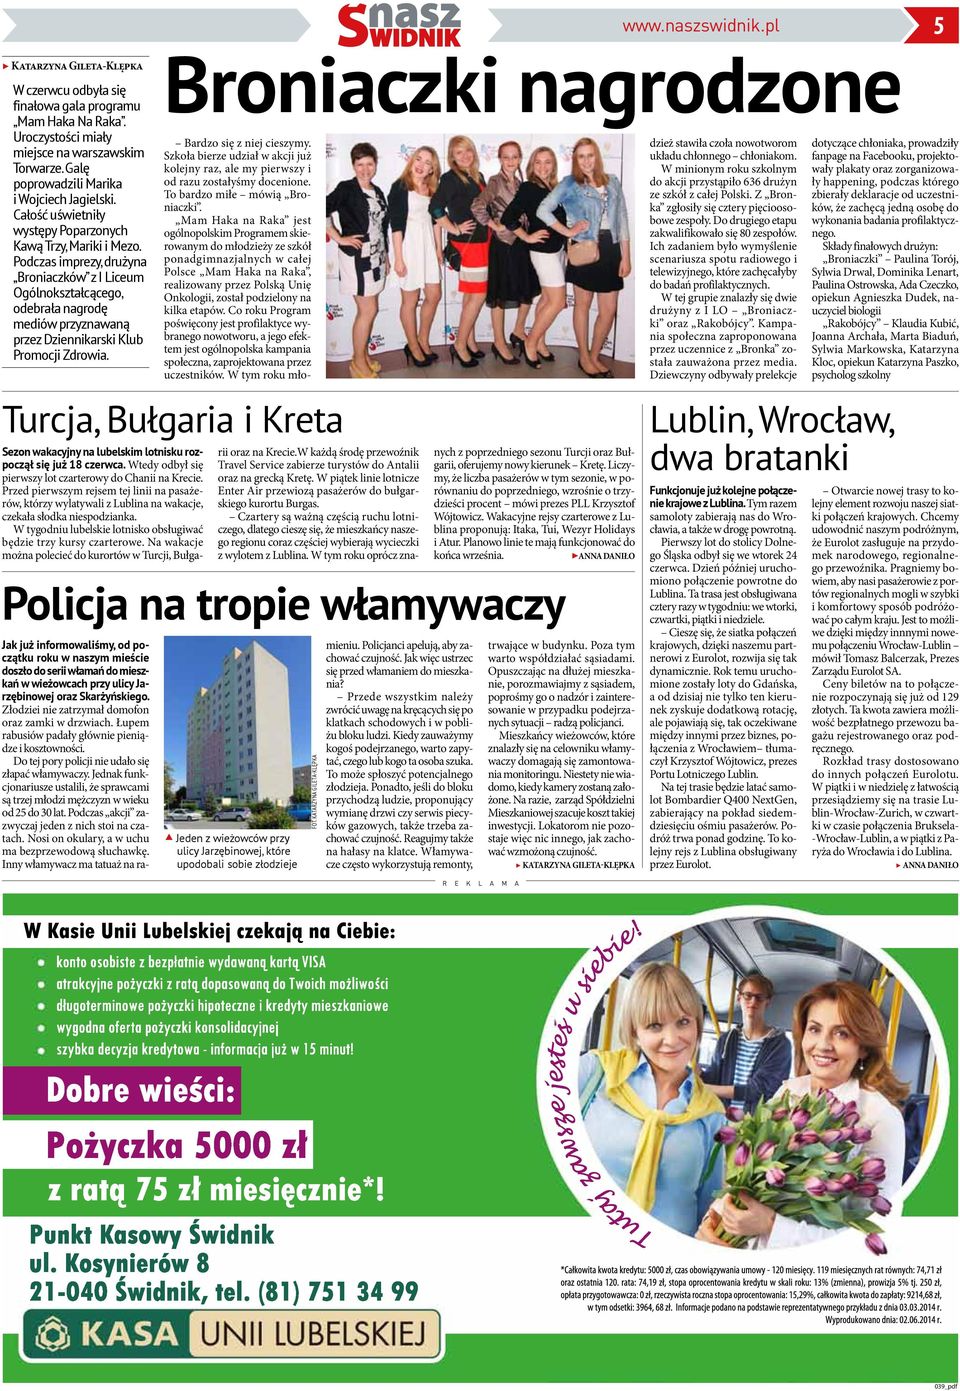 Podczas imprezy, drużyna Broniaczków z I Liceum Ogólnokształcącego, odebrała nagrodę mediów przyznawaną przez Dziennikarski Klub Promocji Zdrowia.